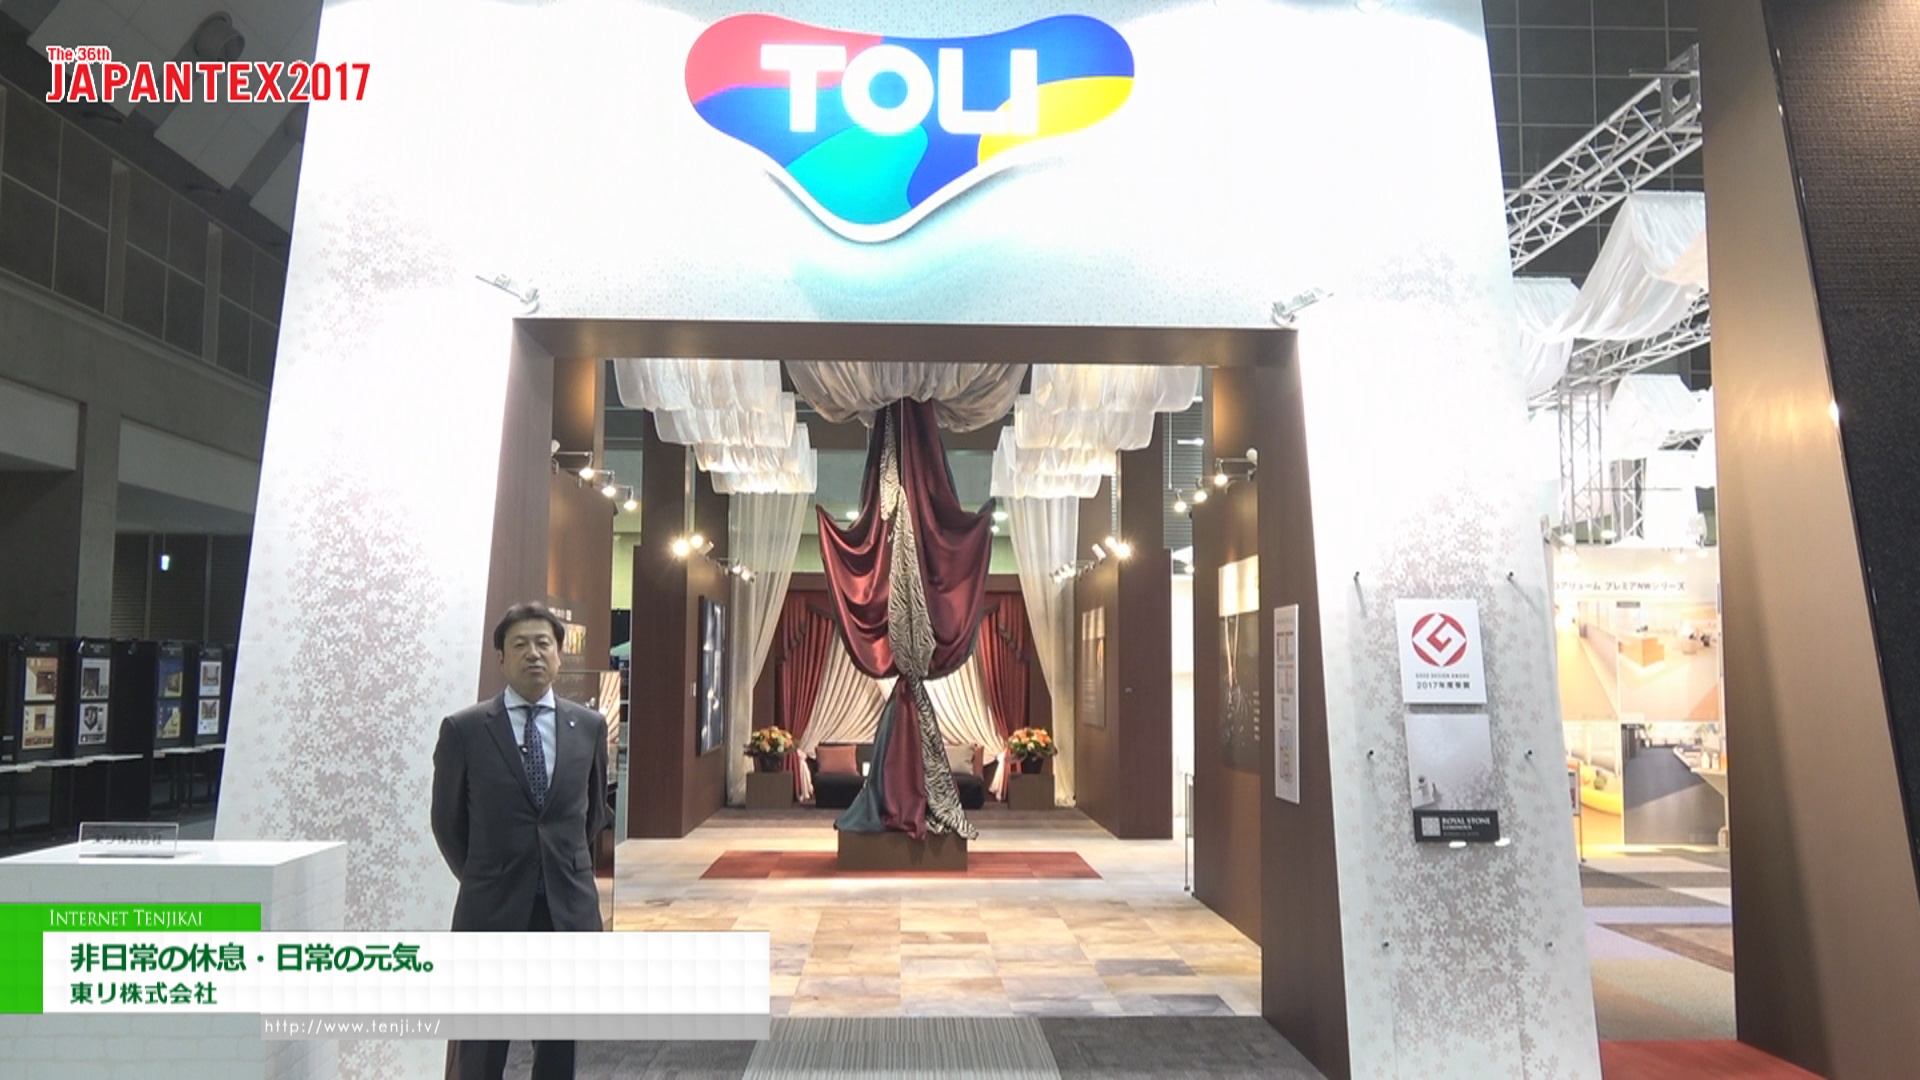 Toli Corporation